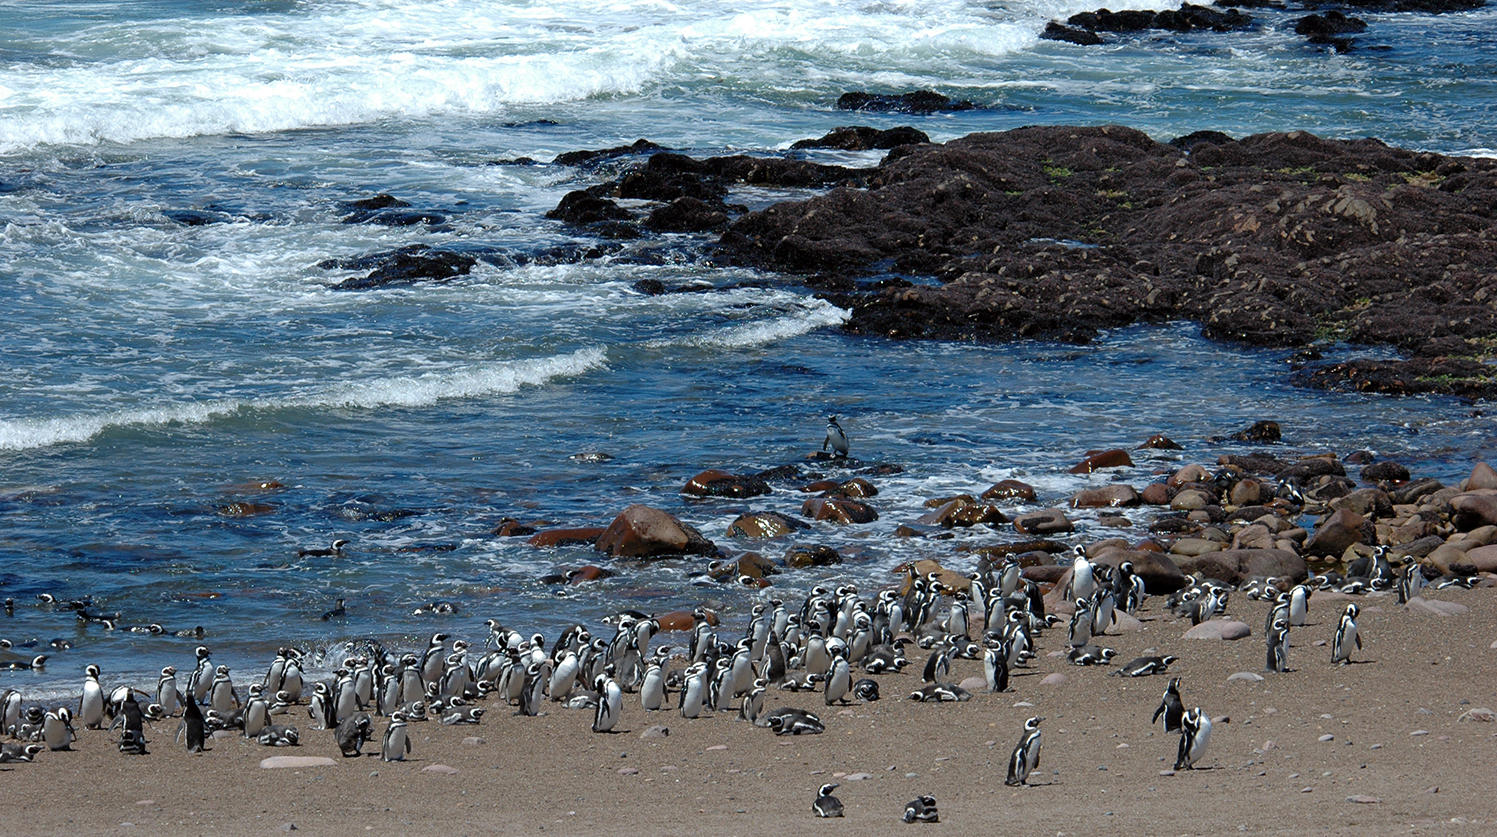 La colonia de pingüinos de Magallanes en Punta Tombo, Argentina, tiene 200.000 parejas reproductoras. Foto: Guillermo Harris/WCS Argentina